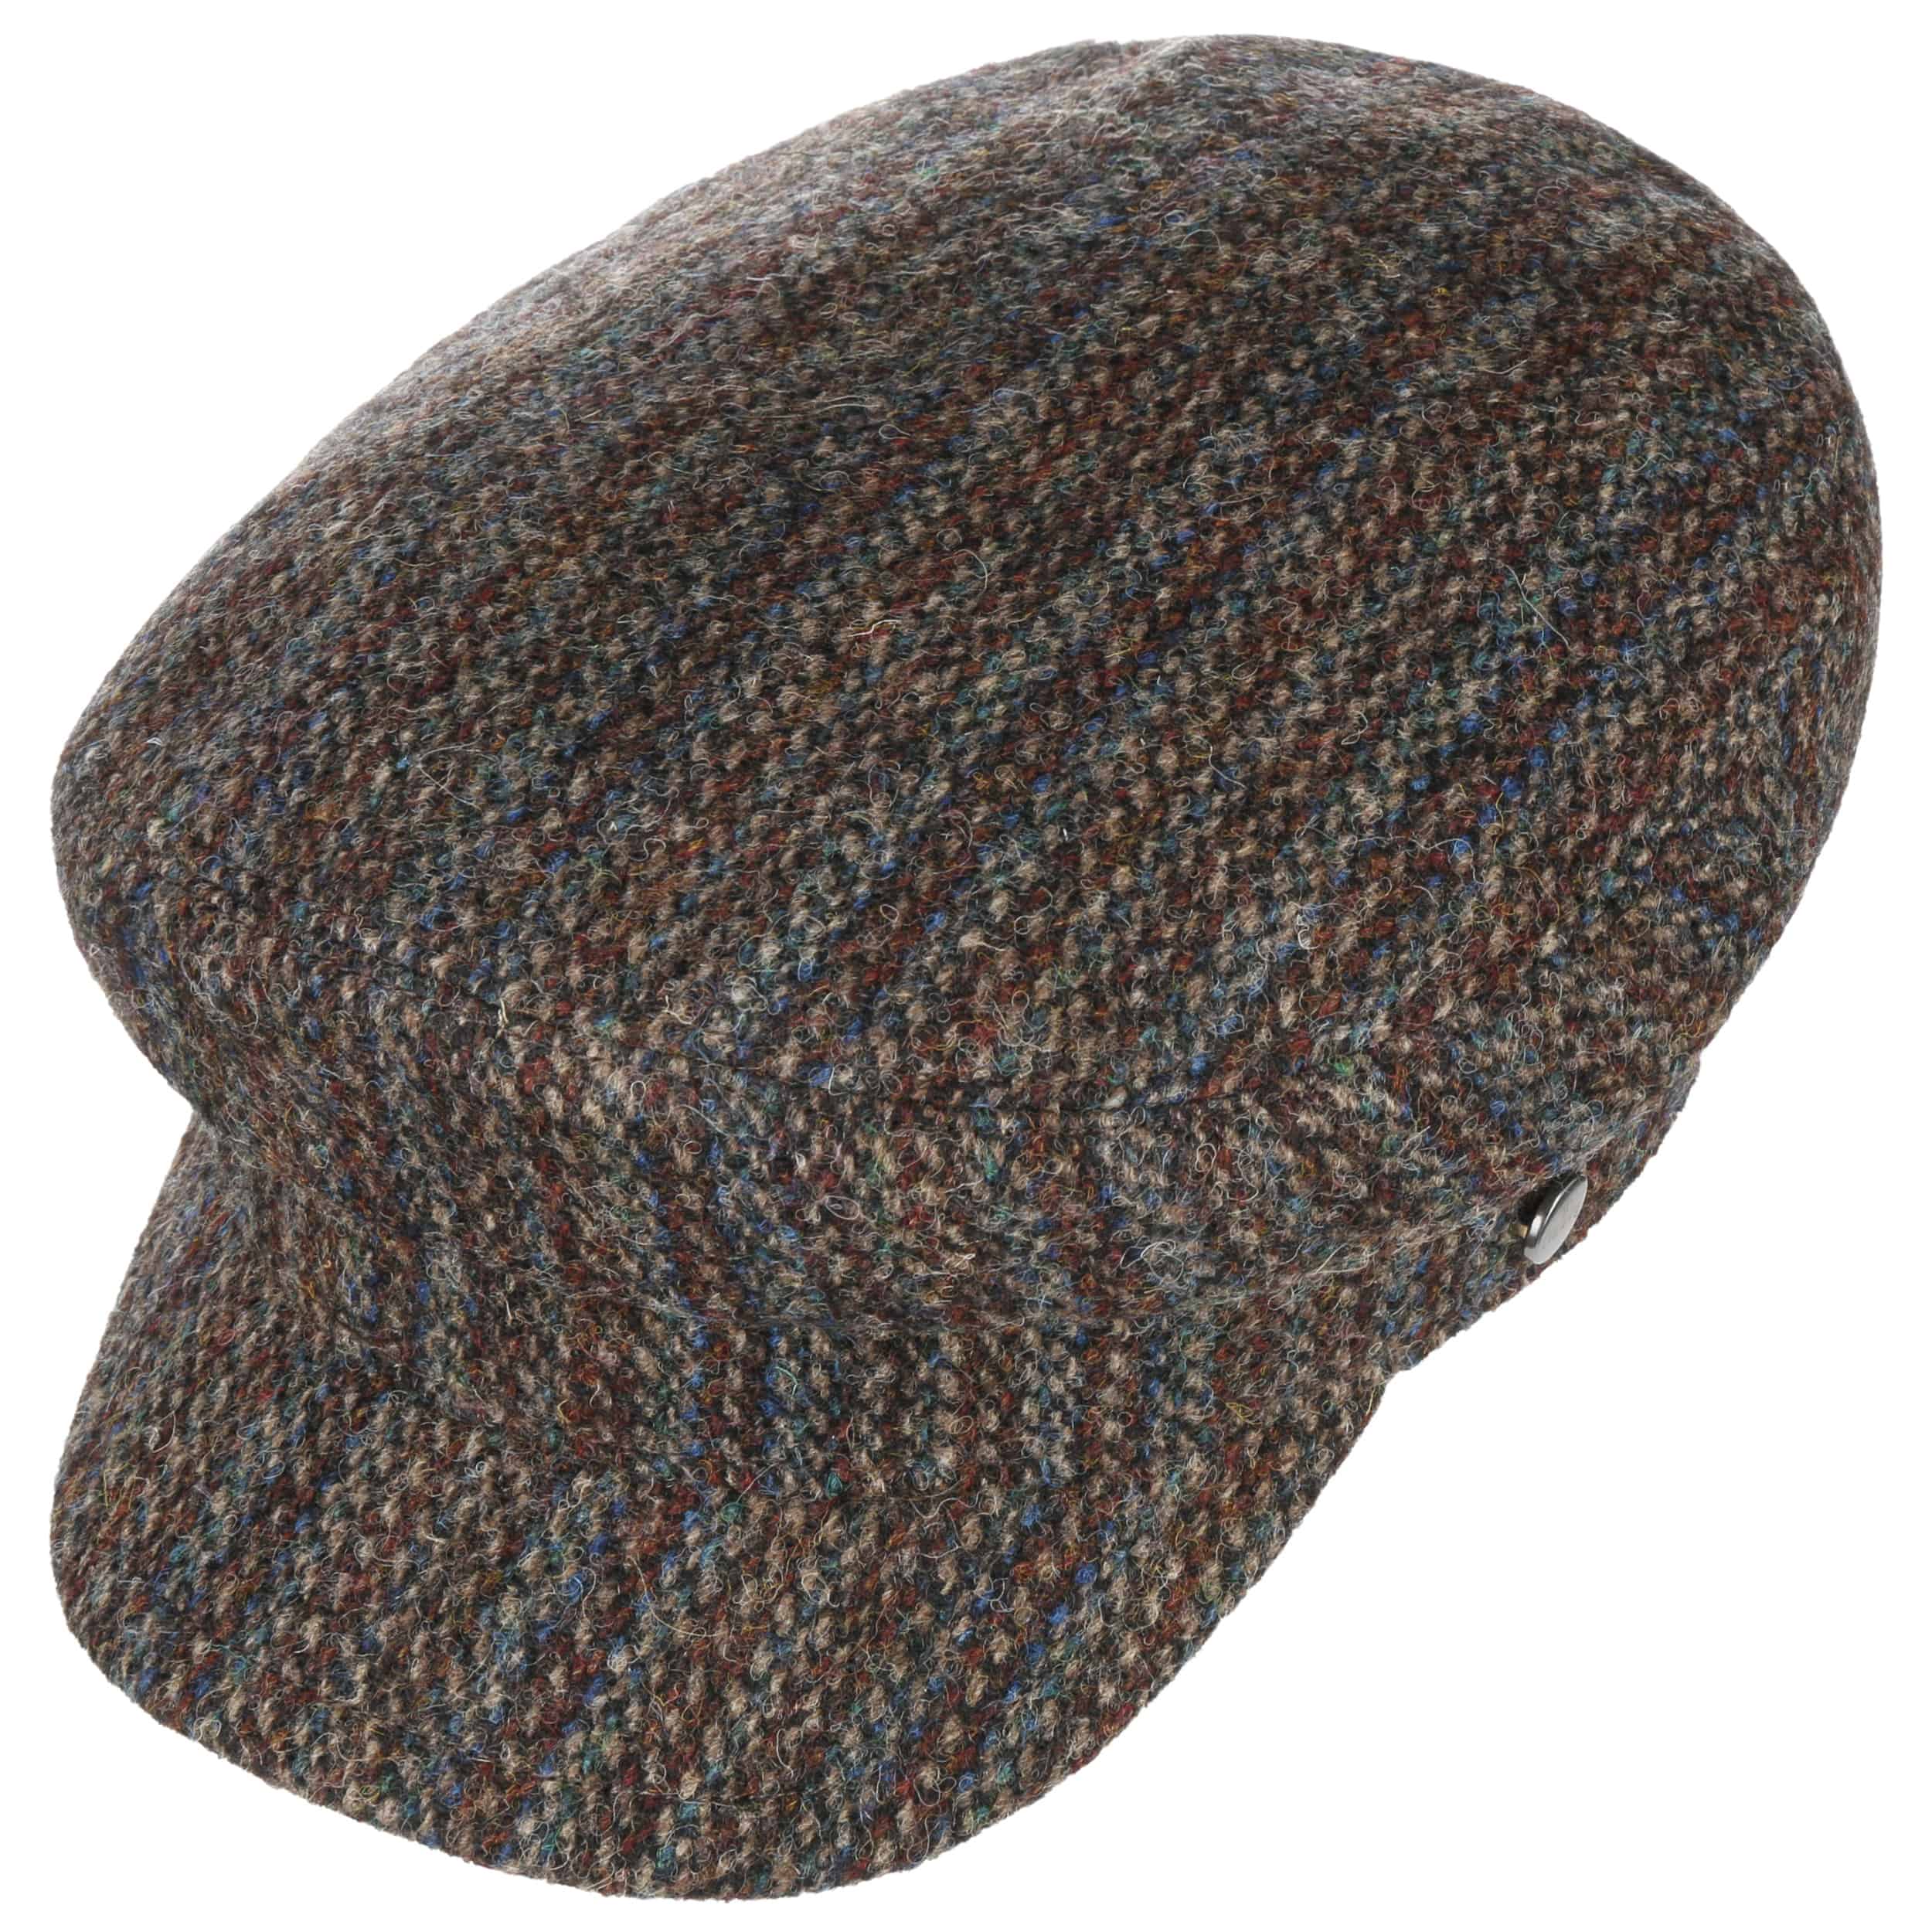 Harris Tweed Fisherman´s Cap by Lierys - 113,95